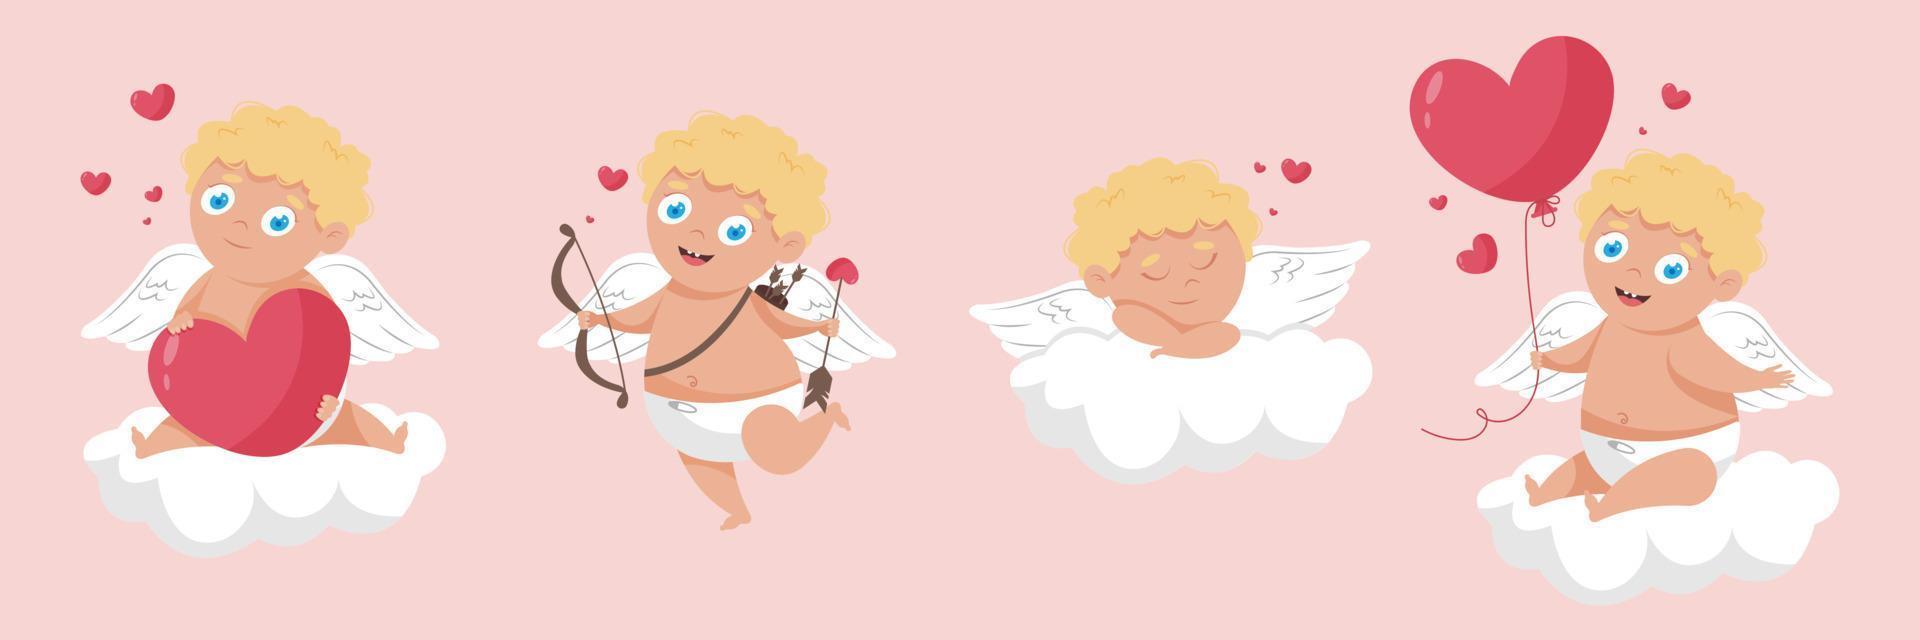 feliz cartel del día de san valentín con un lindo cupido de ángel de cabello rubio rizado con alas en una nube, sosteniendo un corazón de globo, con arco y flechas o simplemente durmiendo en una nube. ilustración vectorial vector